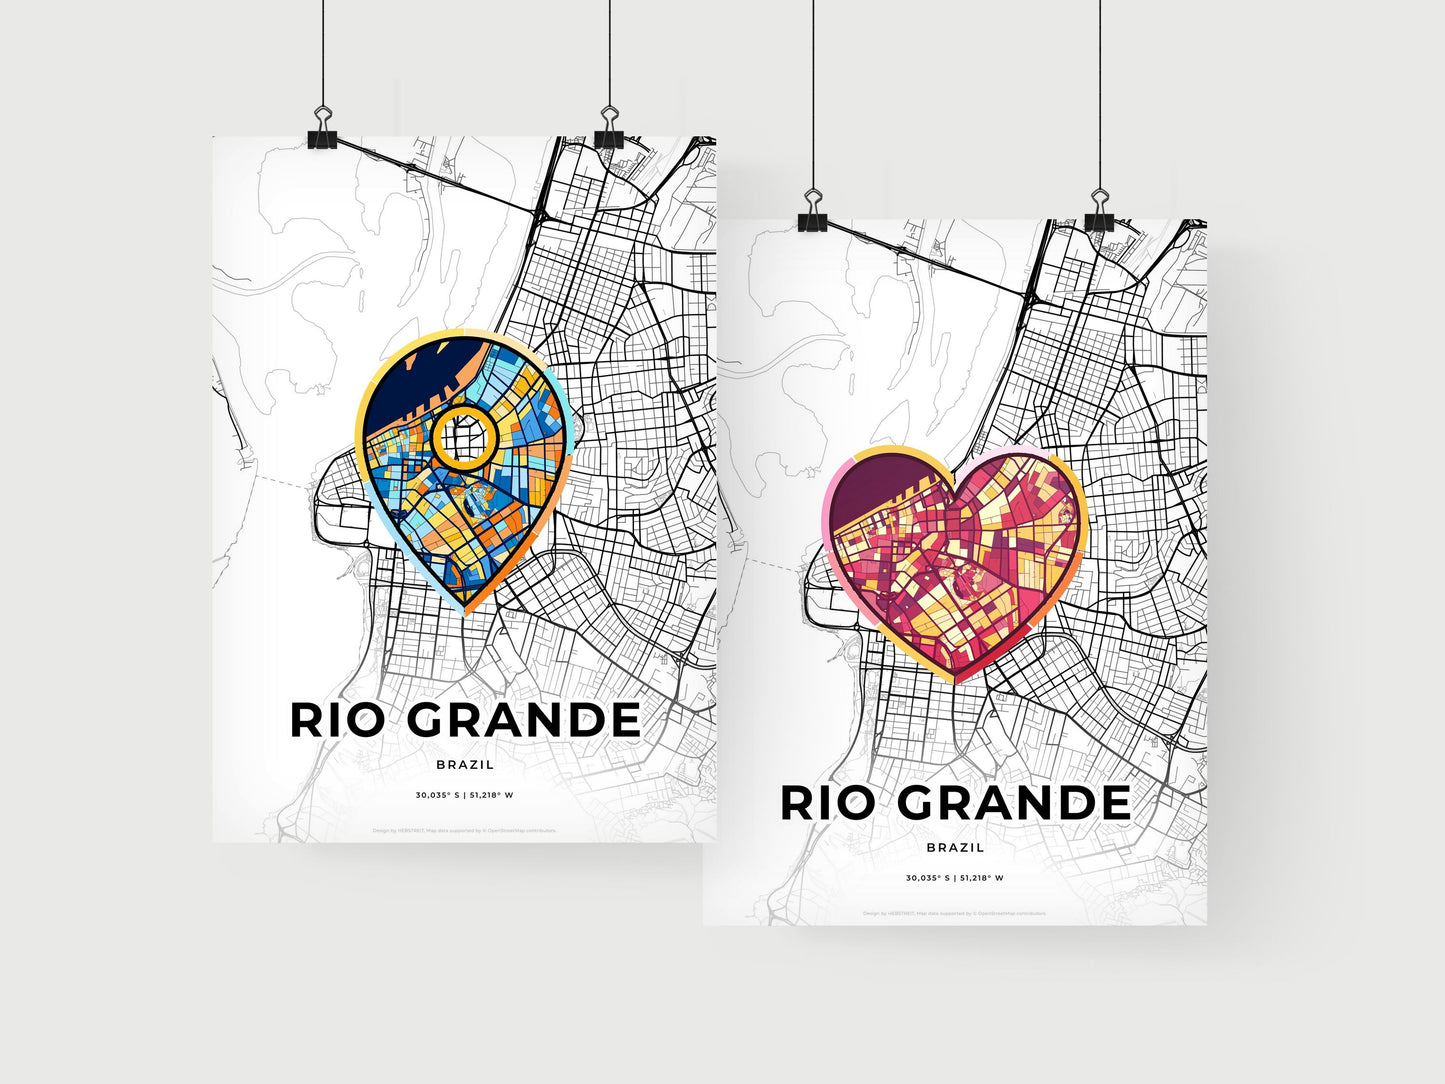 RIO GRANDE BRAZIL minimal art map with a colorful icon.